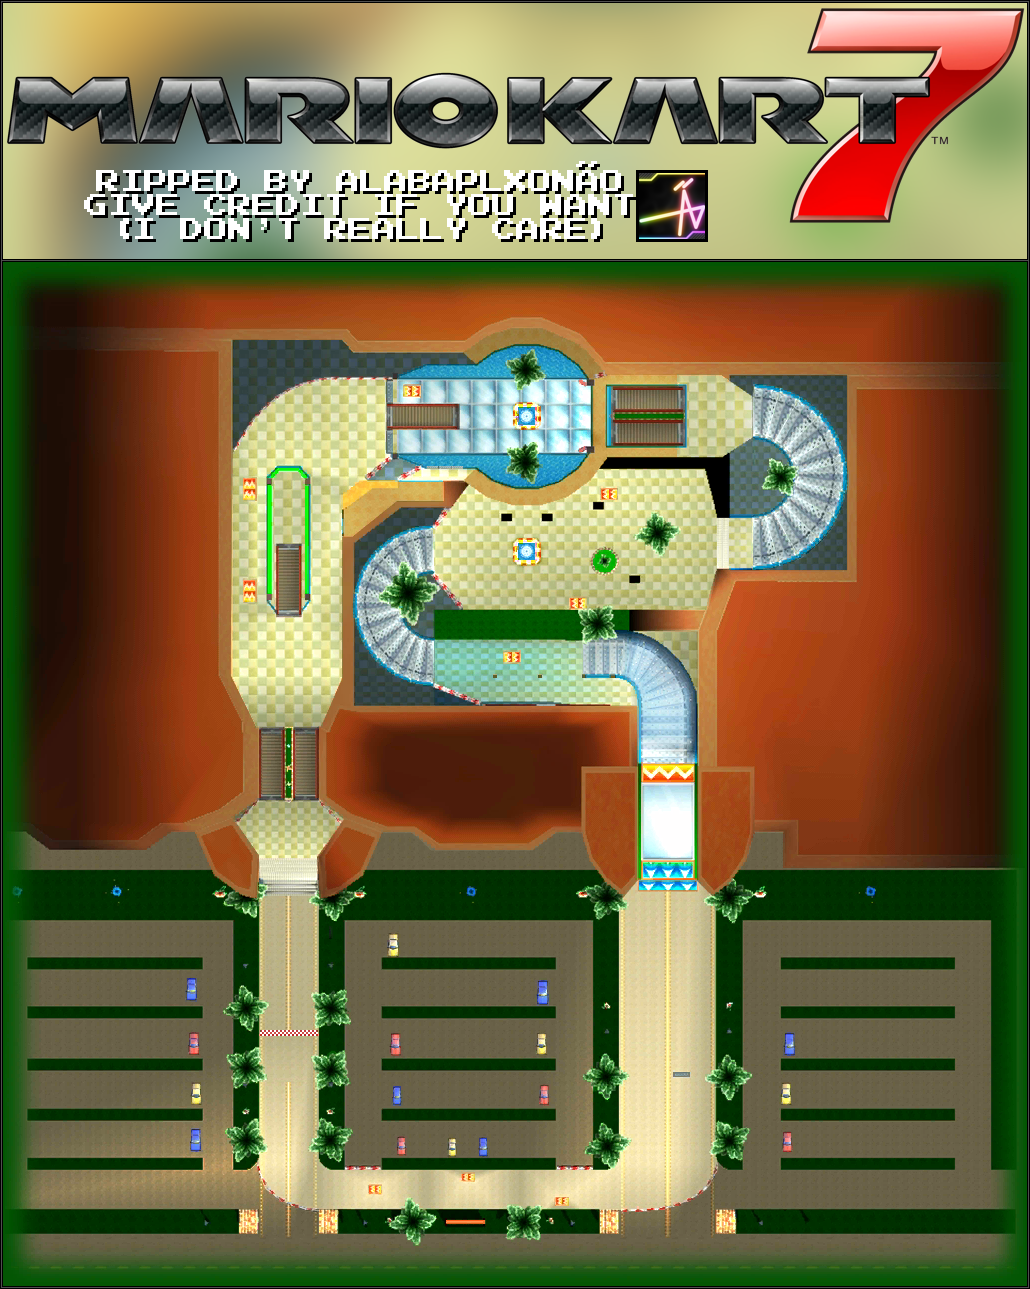 Analist deadline Bouwen The Spriters Resource - Full Sheet View - Mario Kart 7 - Wii Coconut Mall